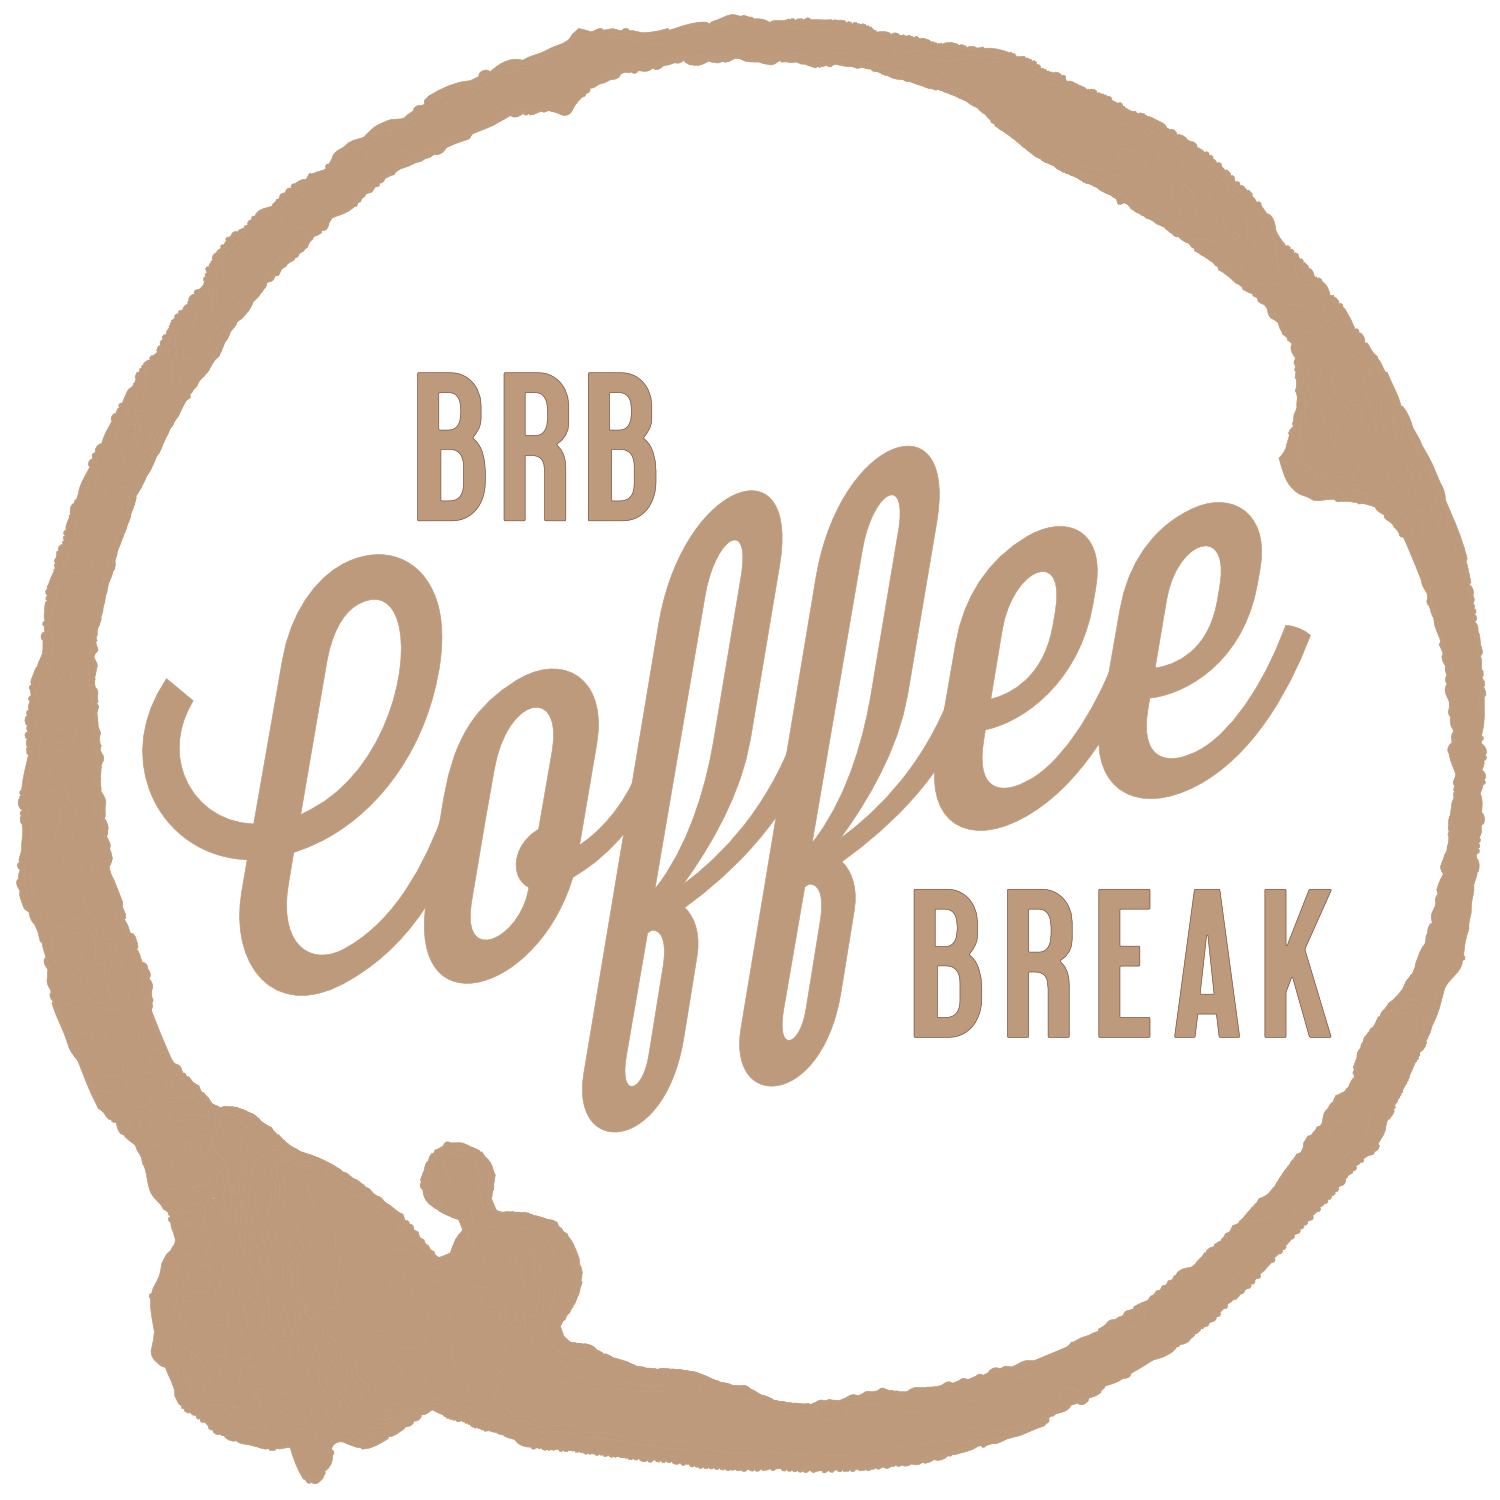 BRB Coffee Break